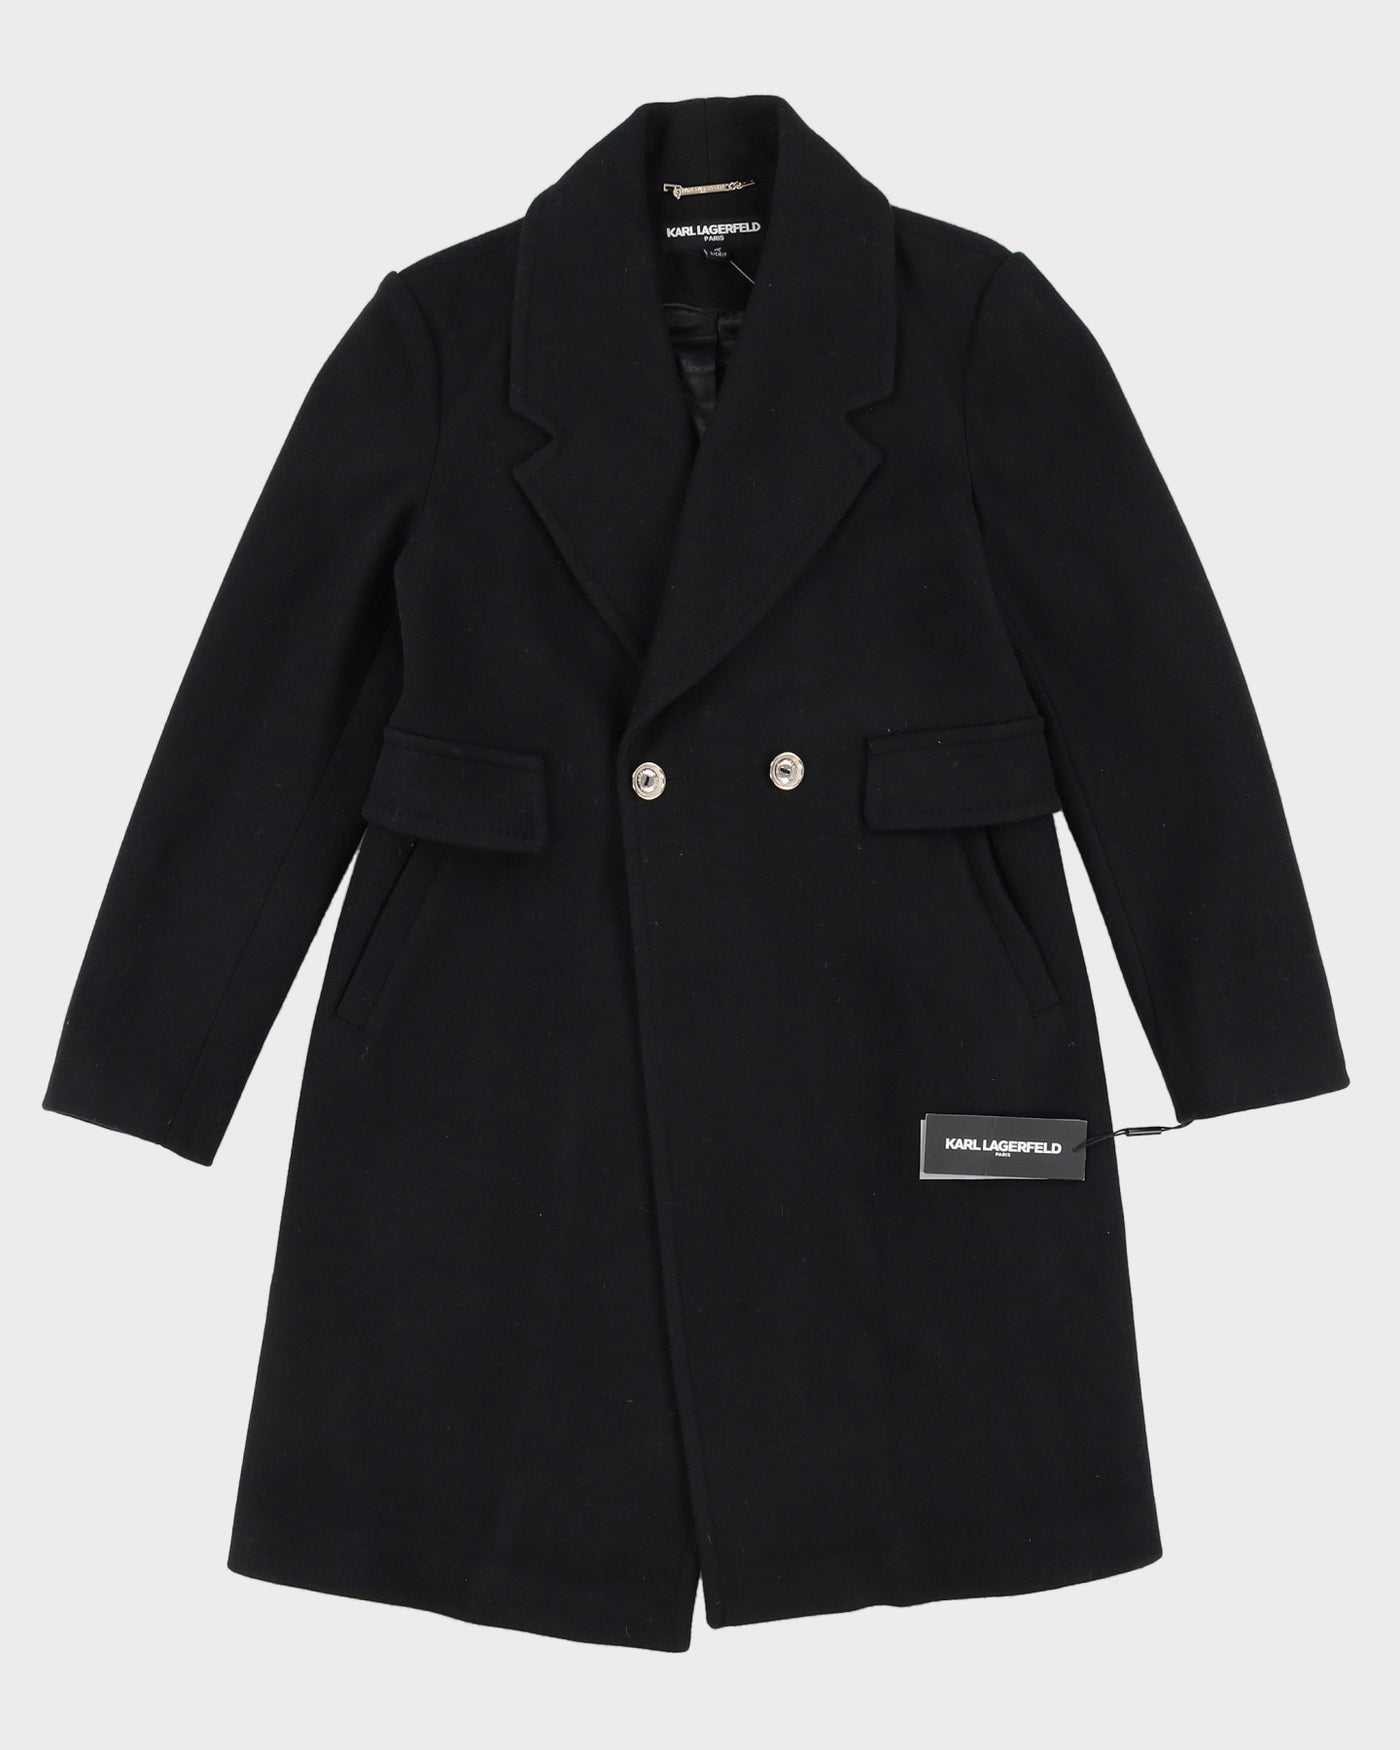 Karl Lagerfeld Black Overcoat - S